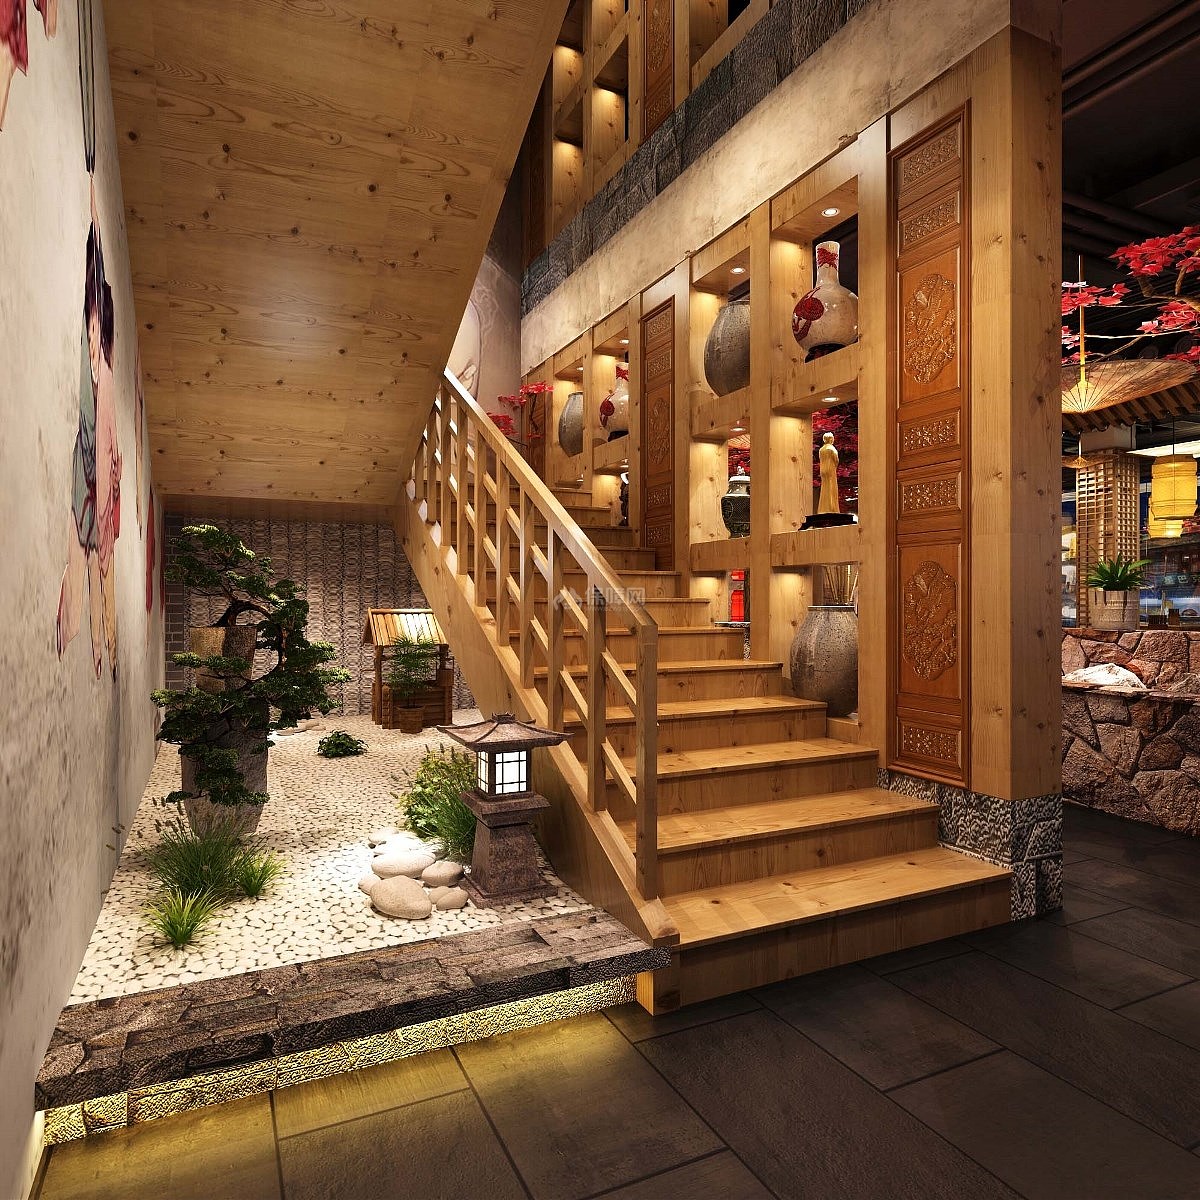 百味记中式主题火锅店之楼梯旁柜子设计效果图